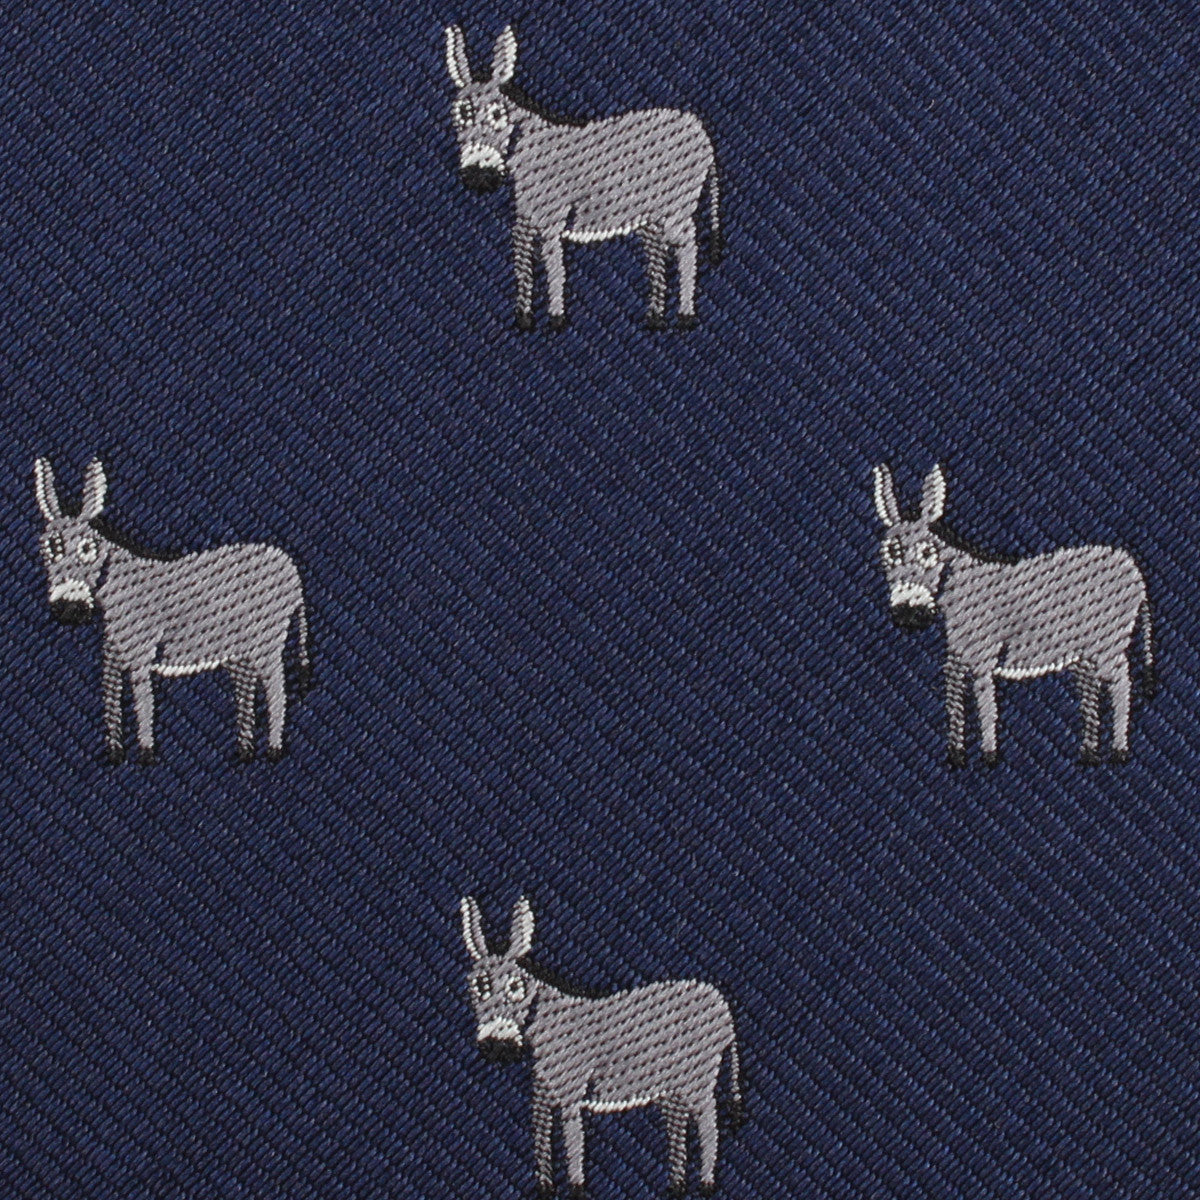 Donkey Fabric Skinny Tie